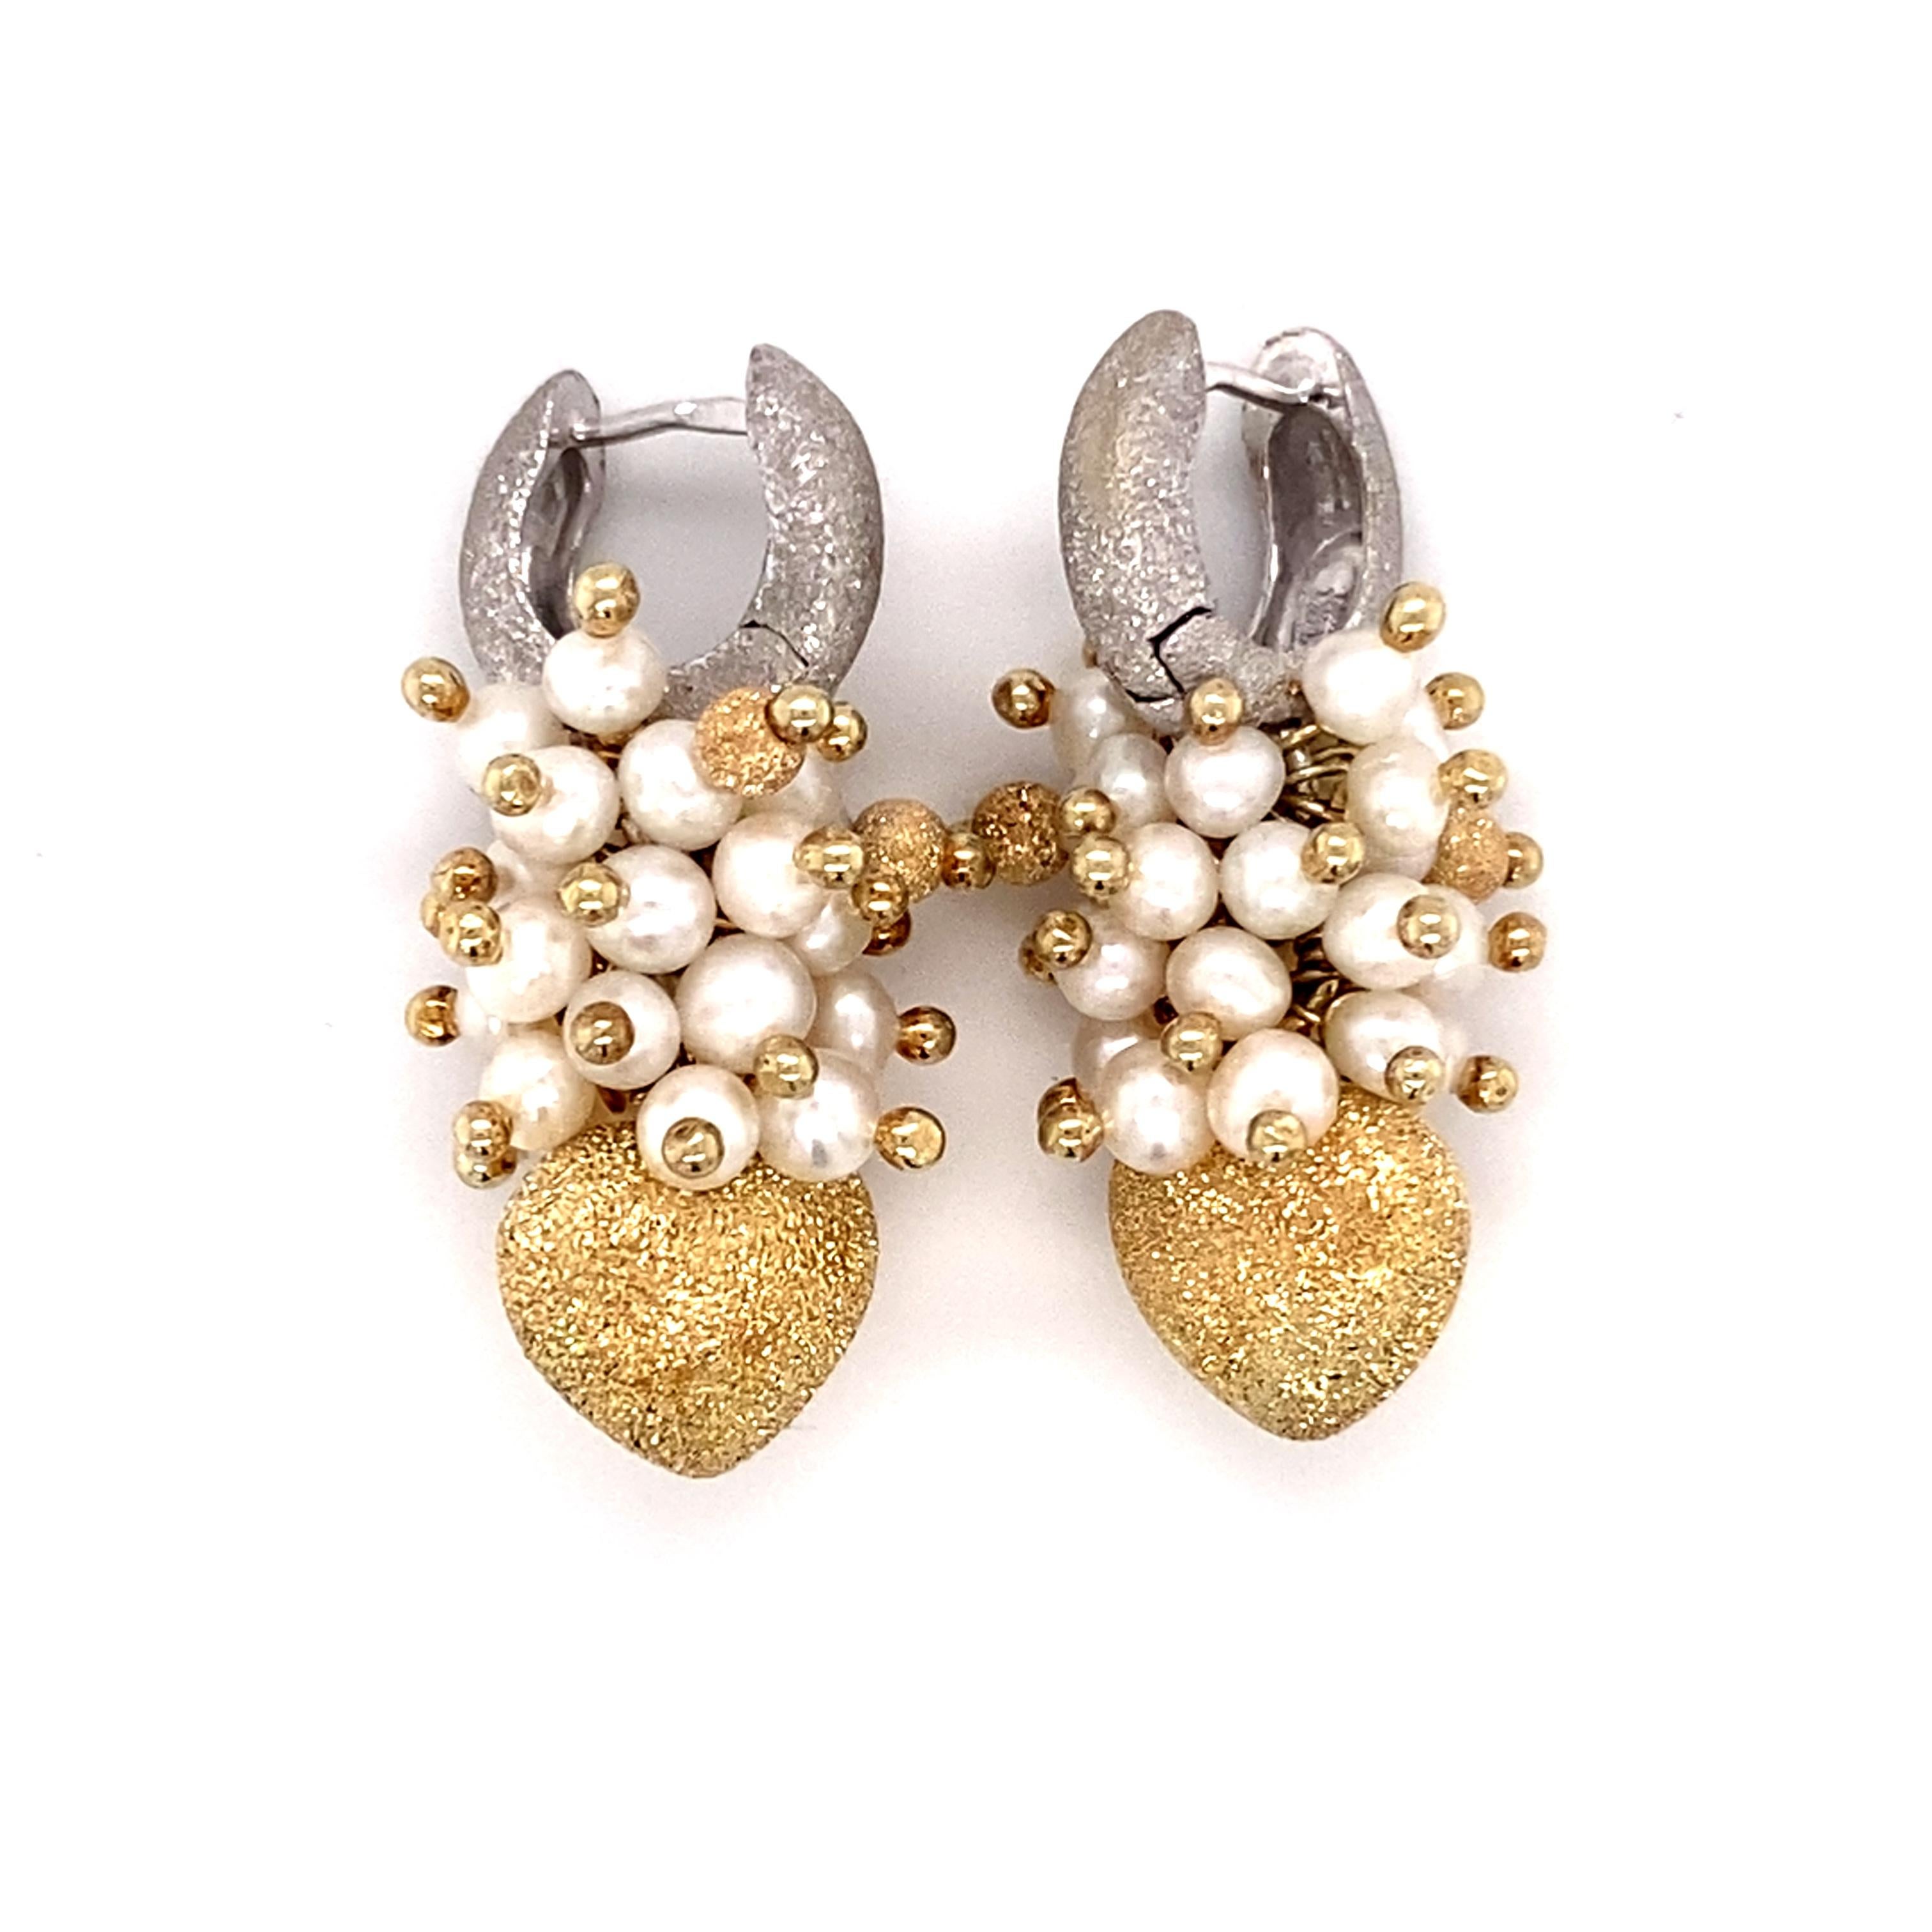 1940 earrings